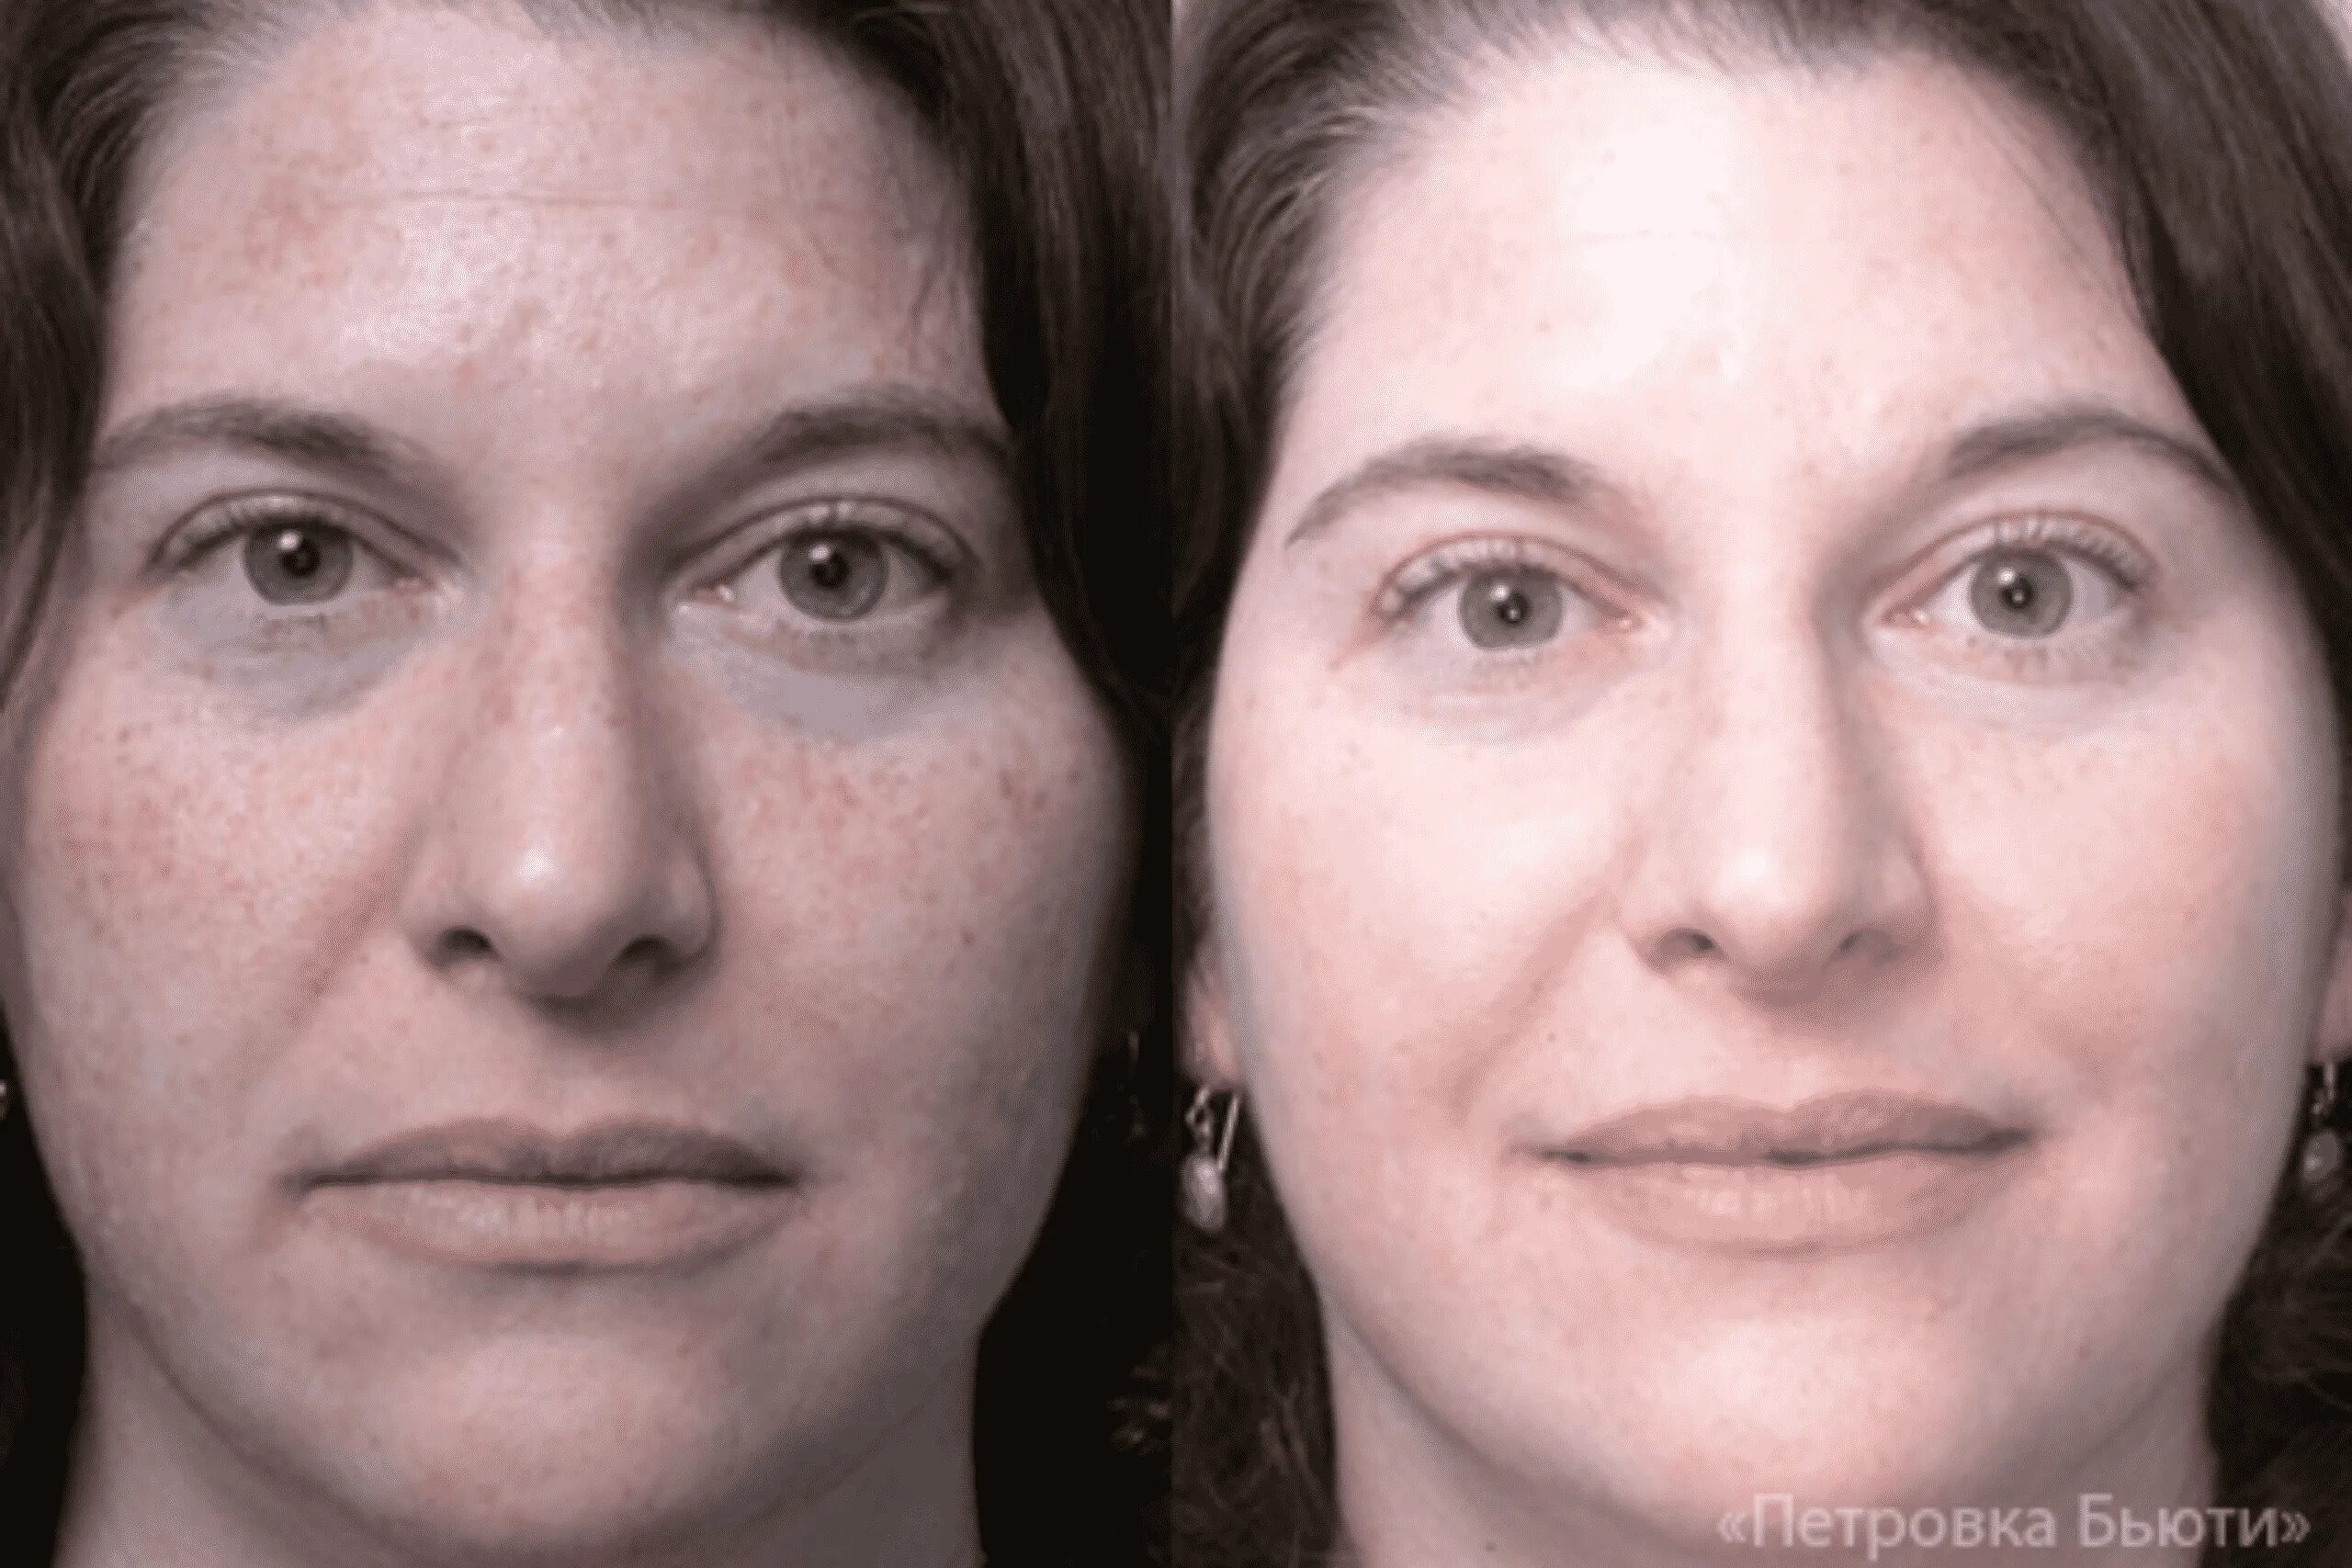 Эффект после лечения. Химический пилинг гликолевой кислотой. Химический пилинг до и после. Химический пилинг лица фото до и после.